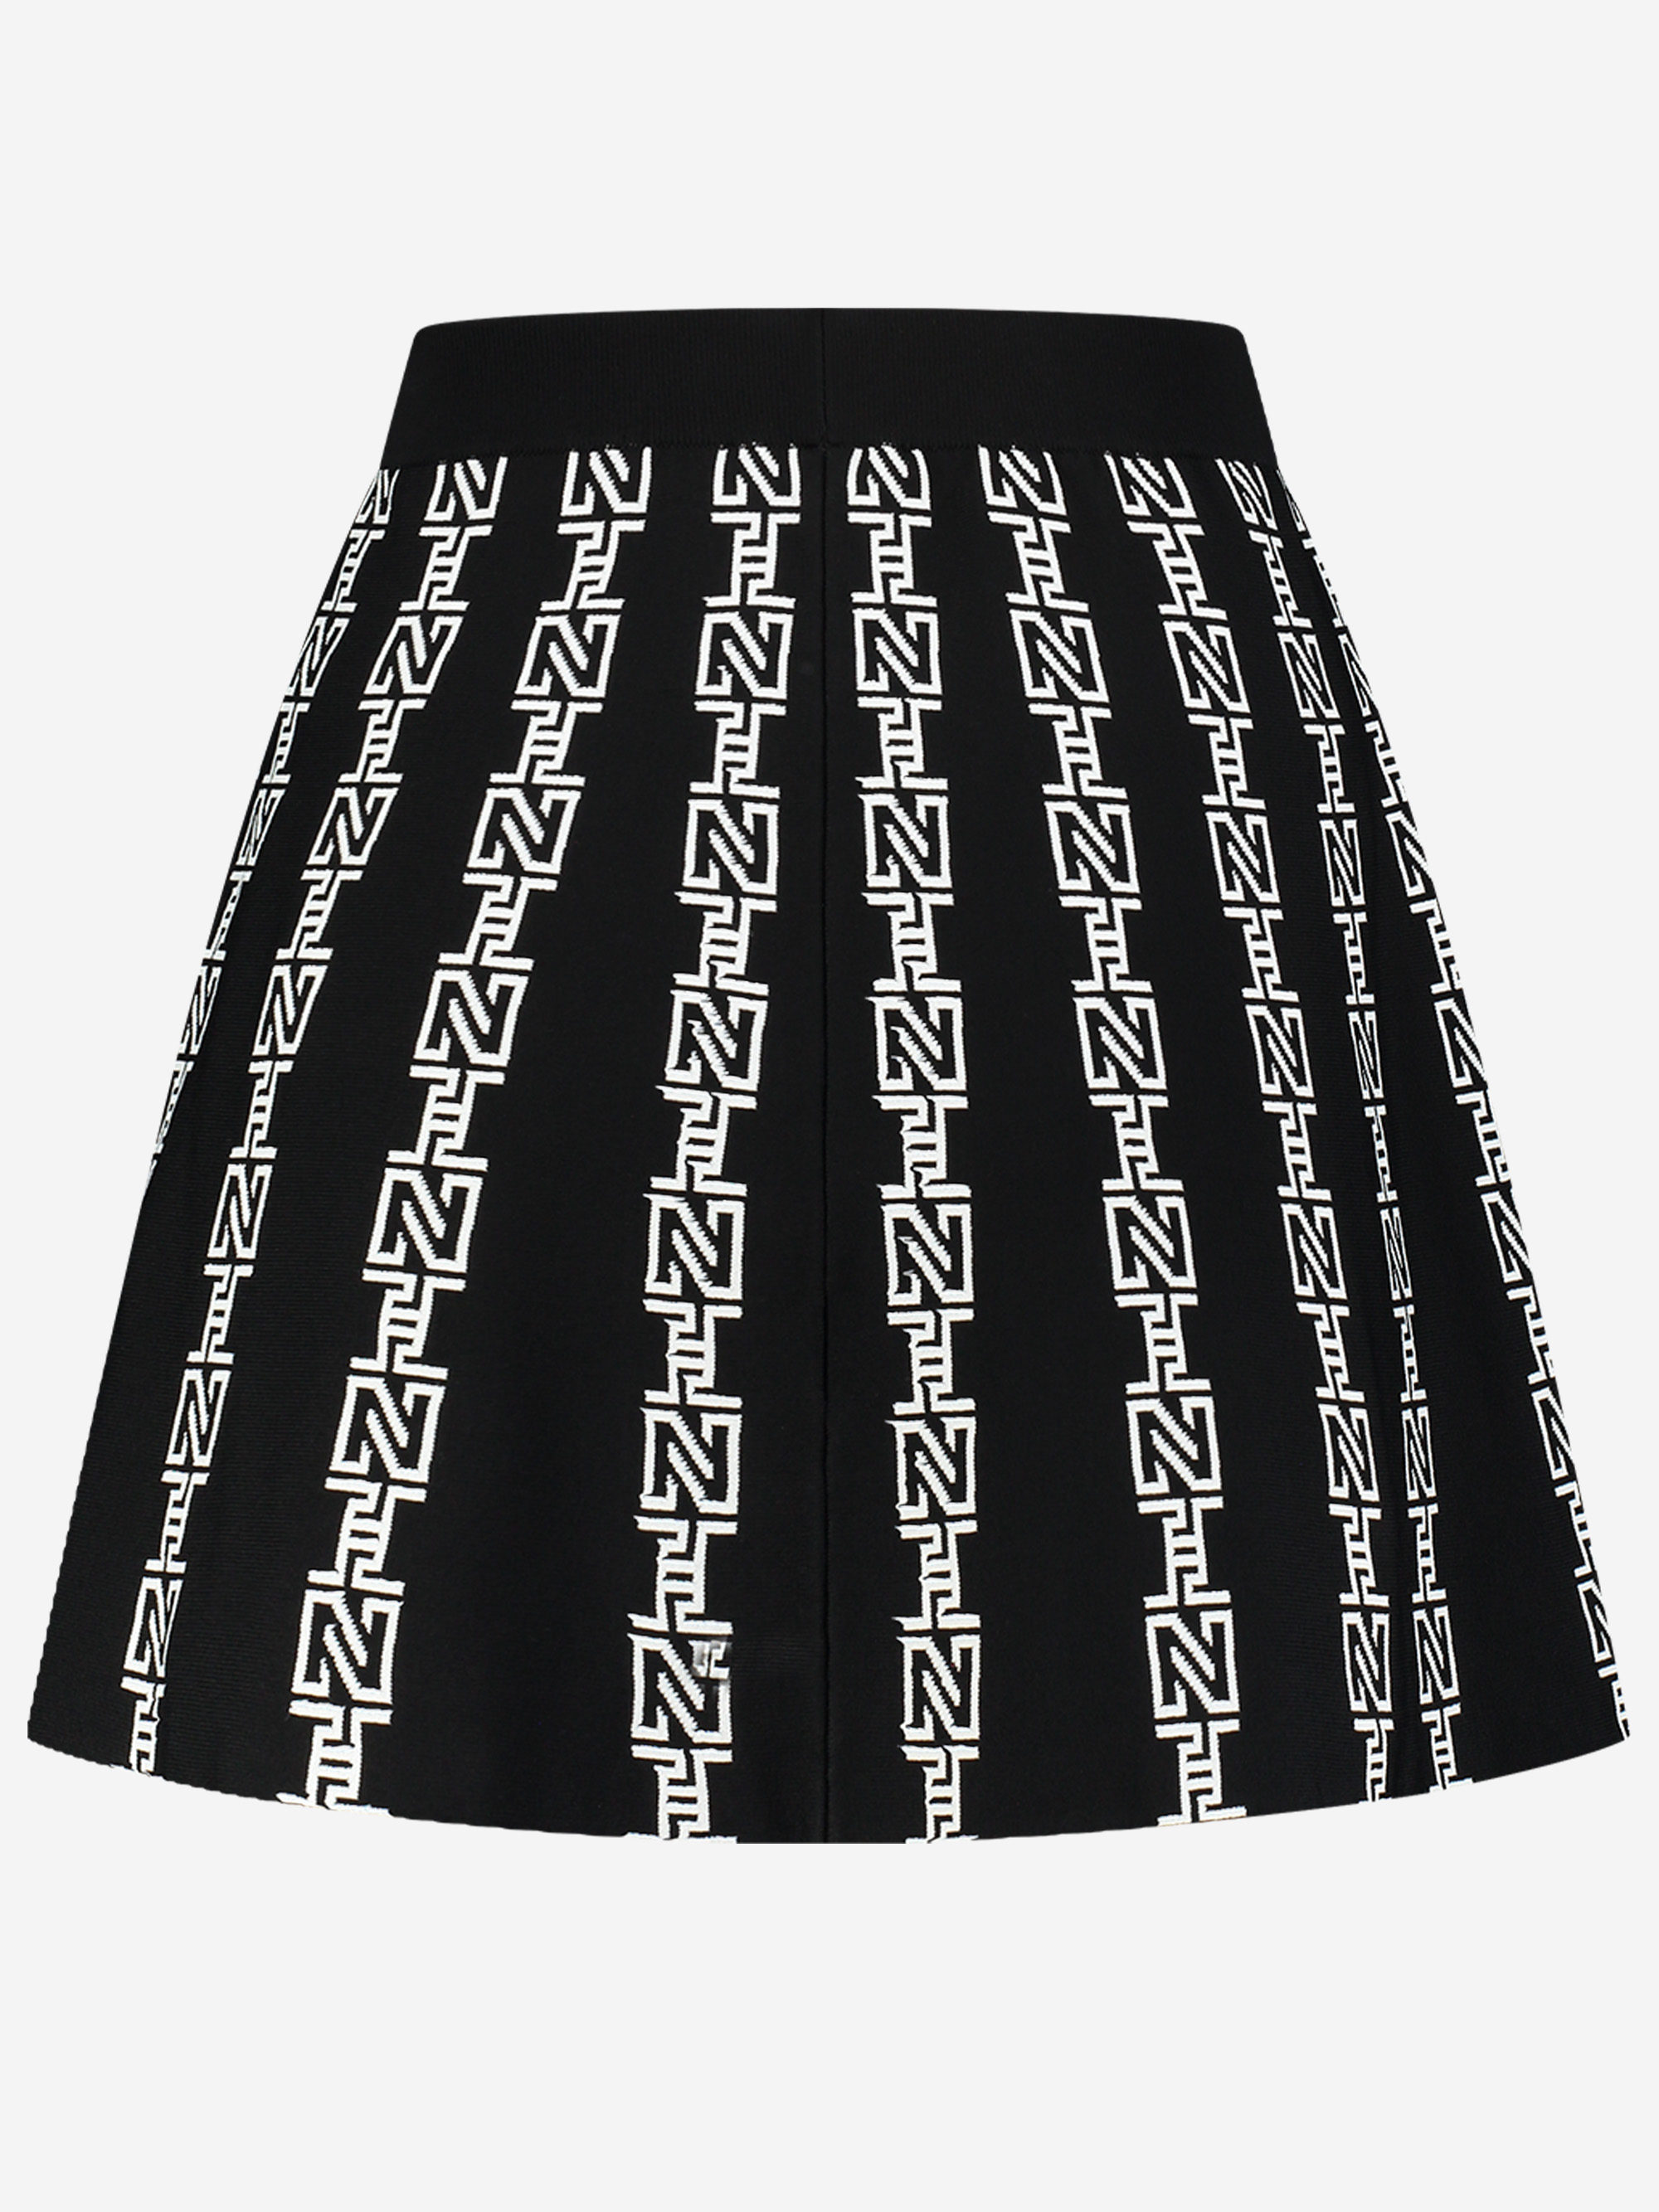 Avon Skirt